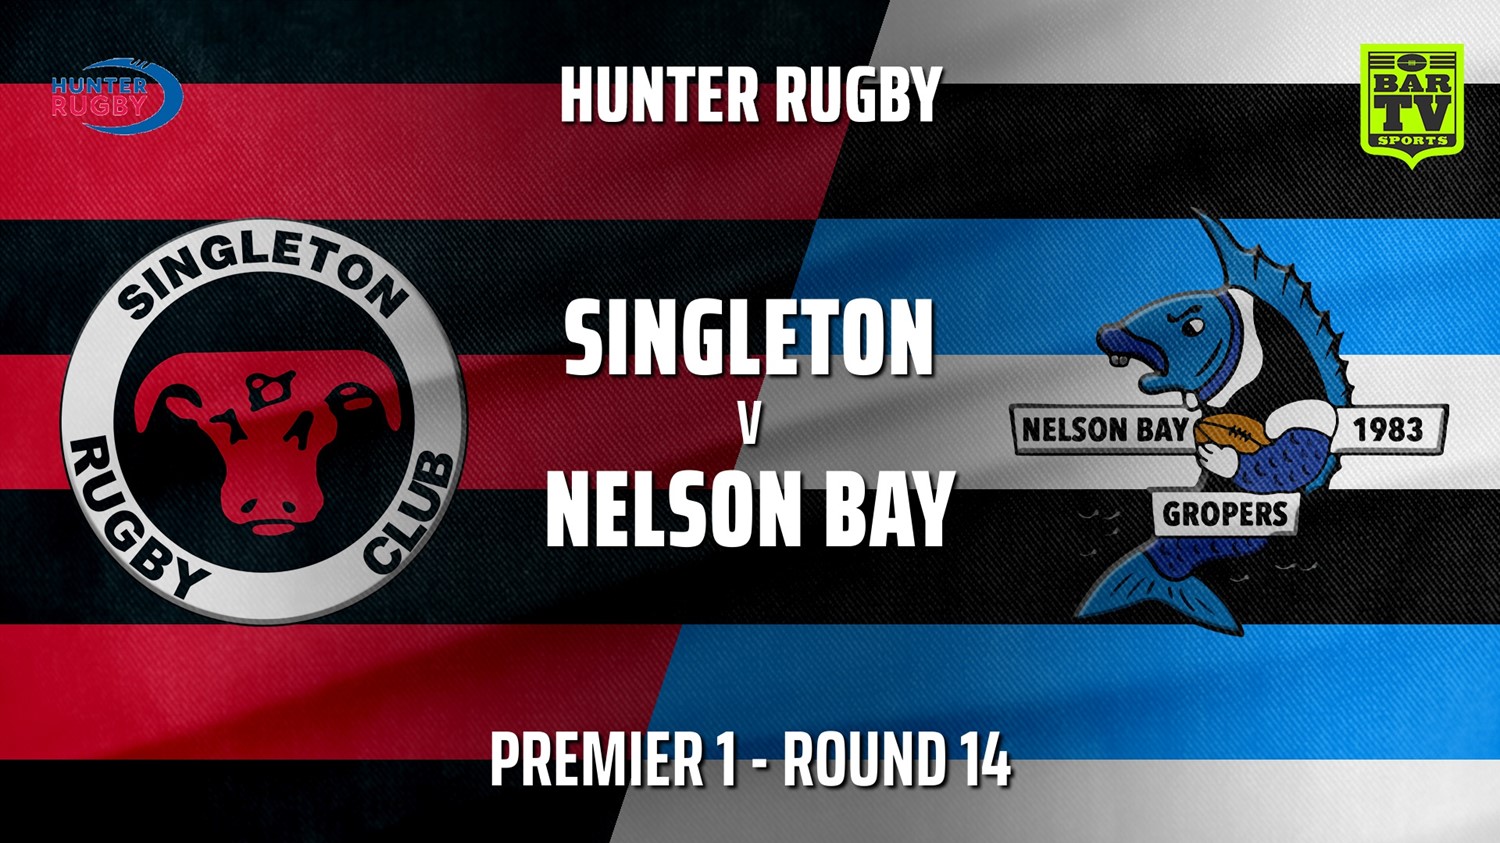 210724-Hunter Rugby Round 14 - Premier 1 - Singleton Bulls v Nelson Bay Gropers Slate Image